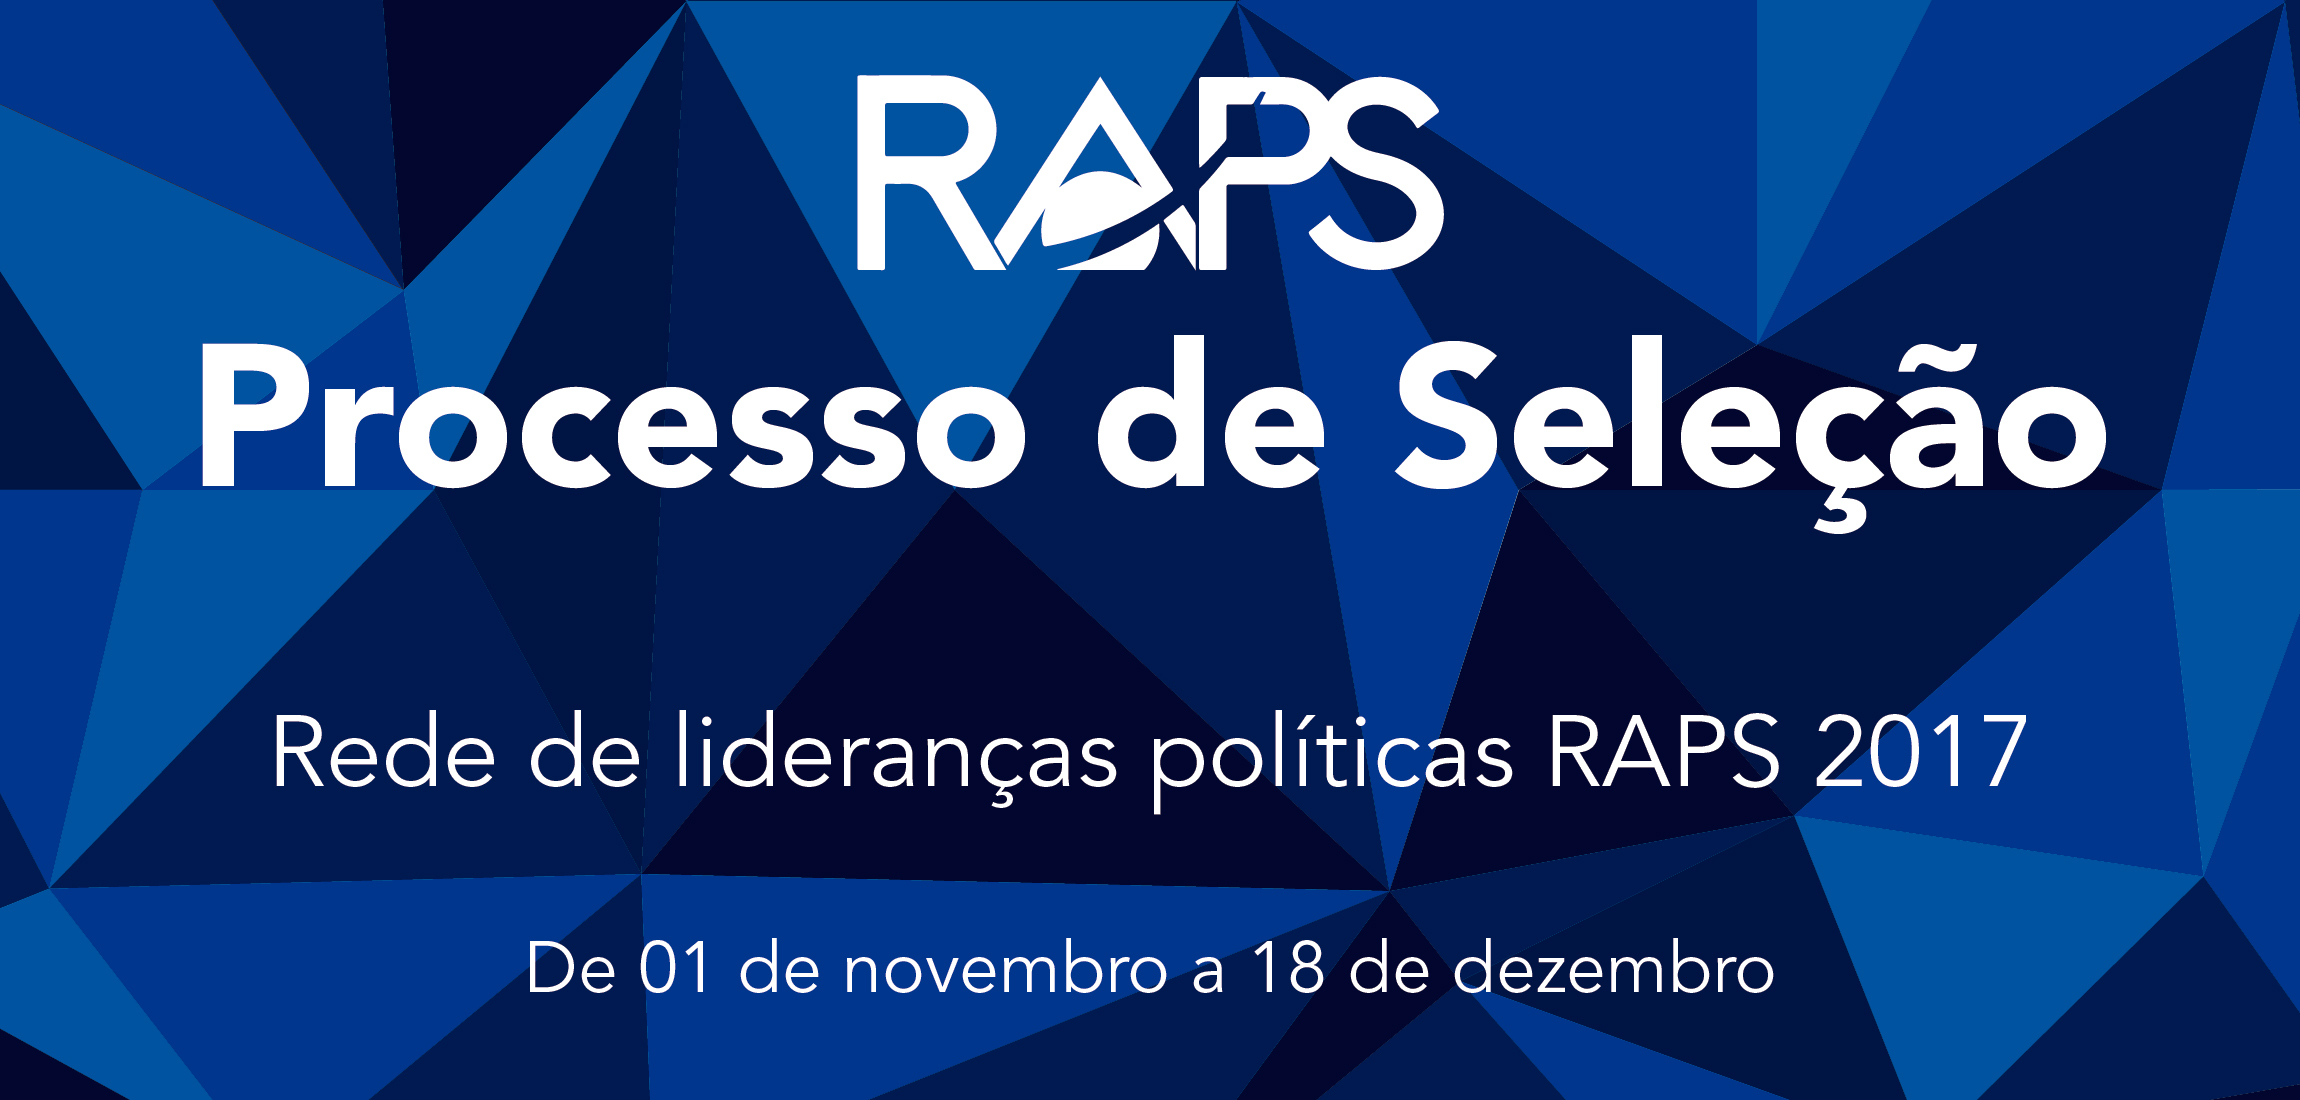 RAPS busca novas lideranças para mudar o Brasil